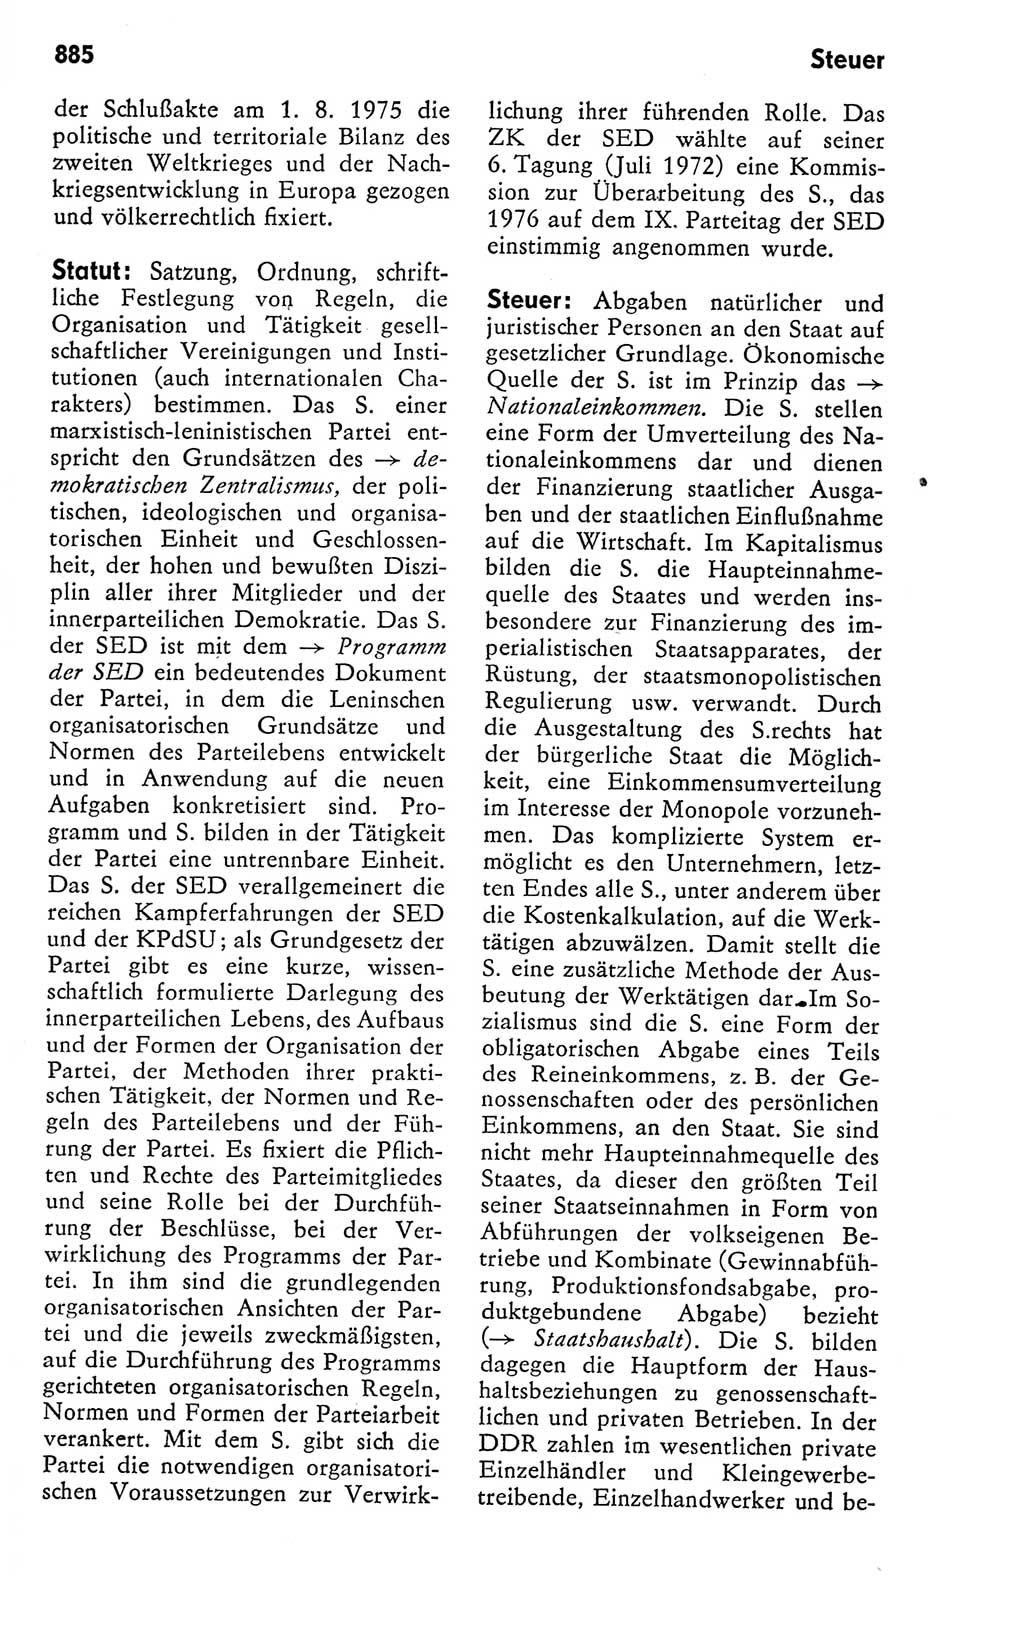 Kleines politisches Wörterbuch [Deutsche Demokratische Republik (DDR)] 1978, Seite 885 (Kl. pol. Wb. DDR 1978, S. 885)